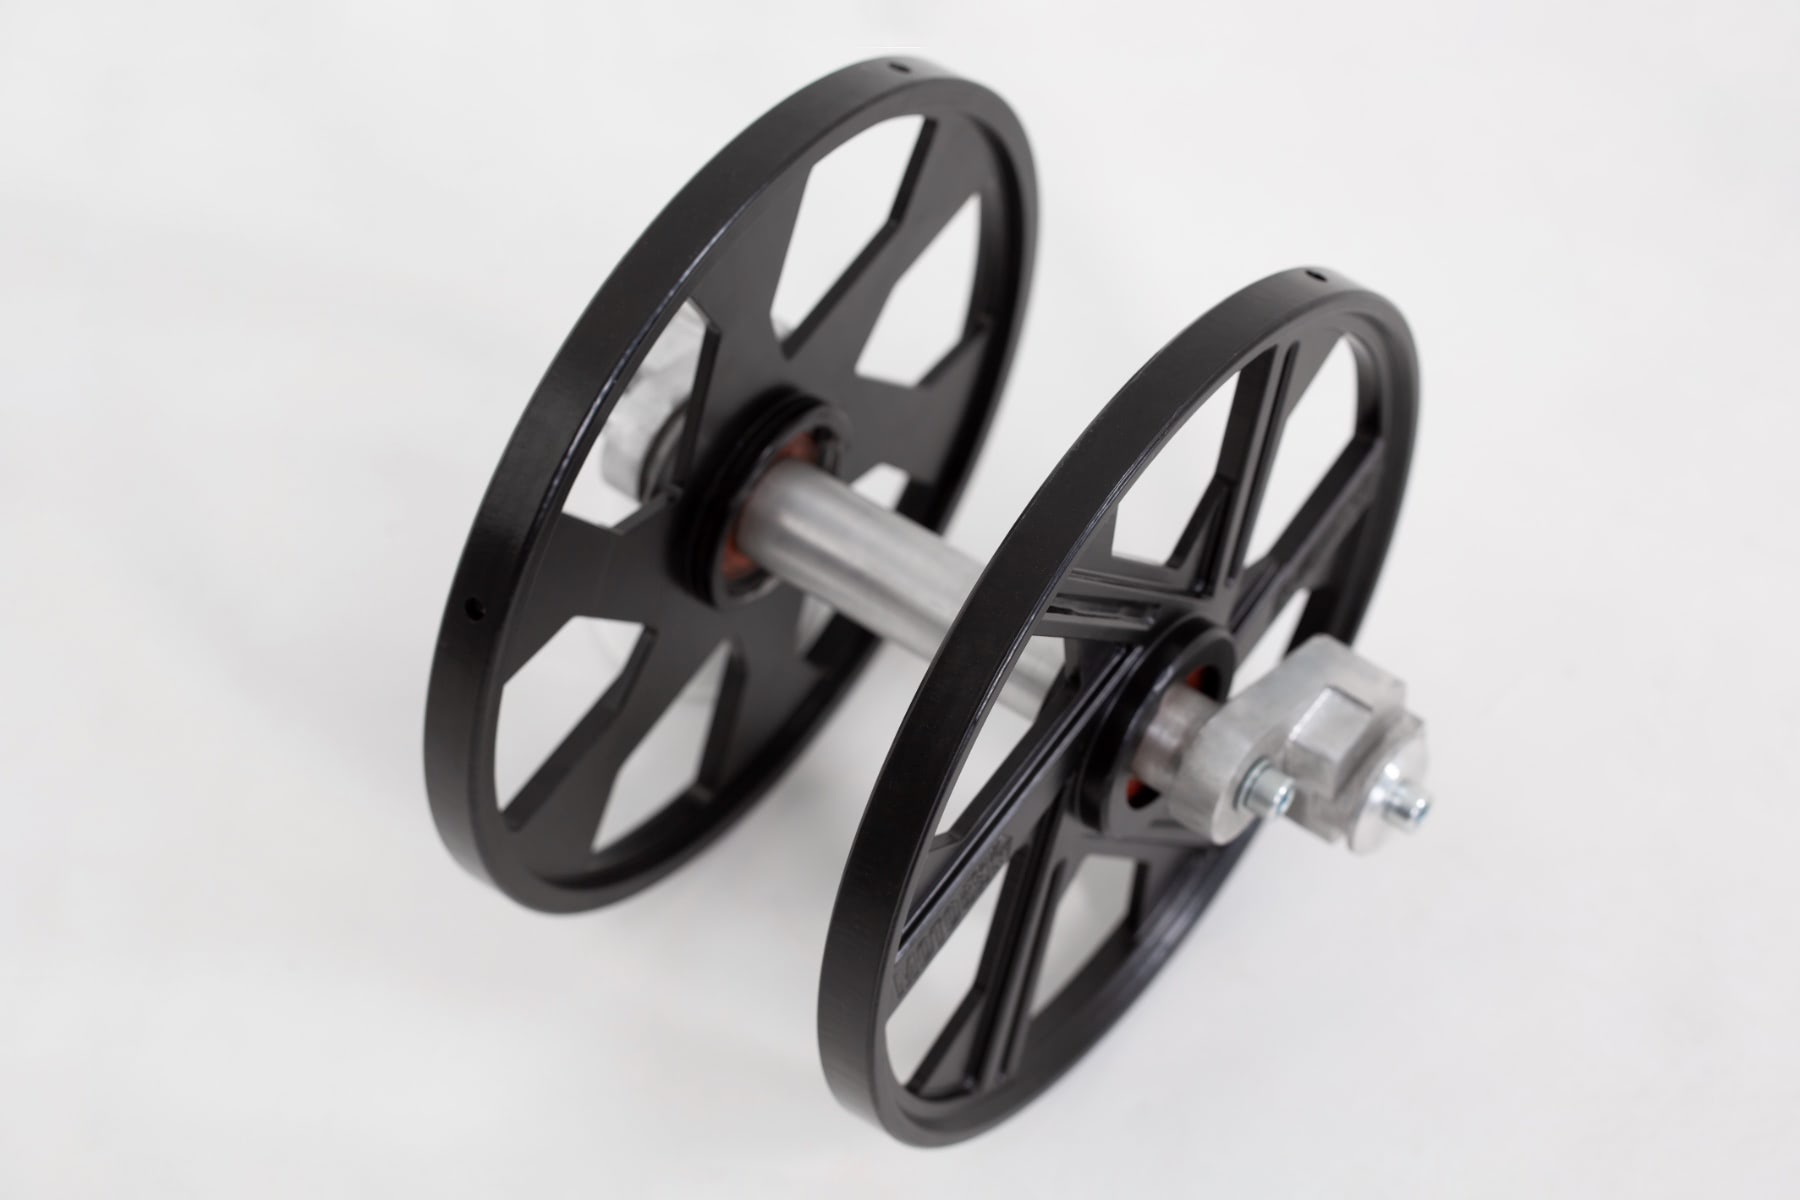 Cimex Big Boy Wheel Kit Actualizar 10 pulgadas para todos los Cimex —  ExcellentSupply.com